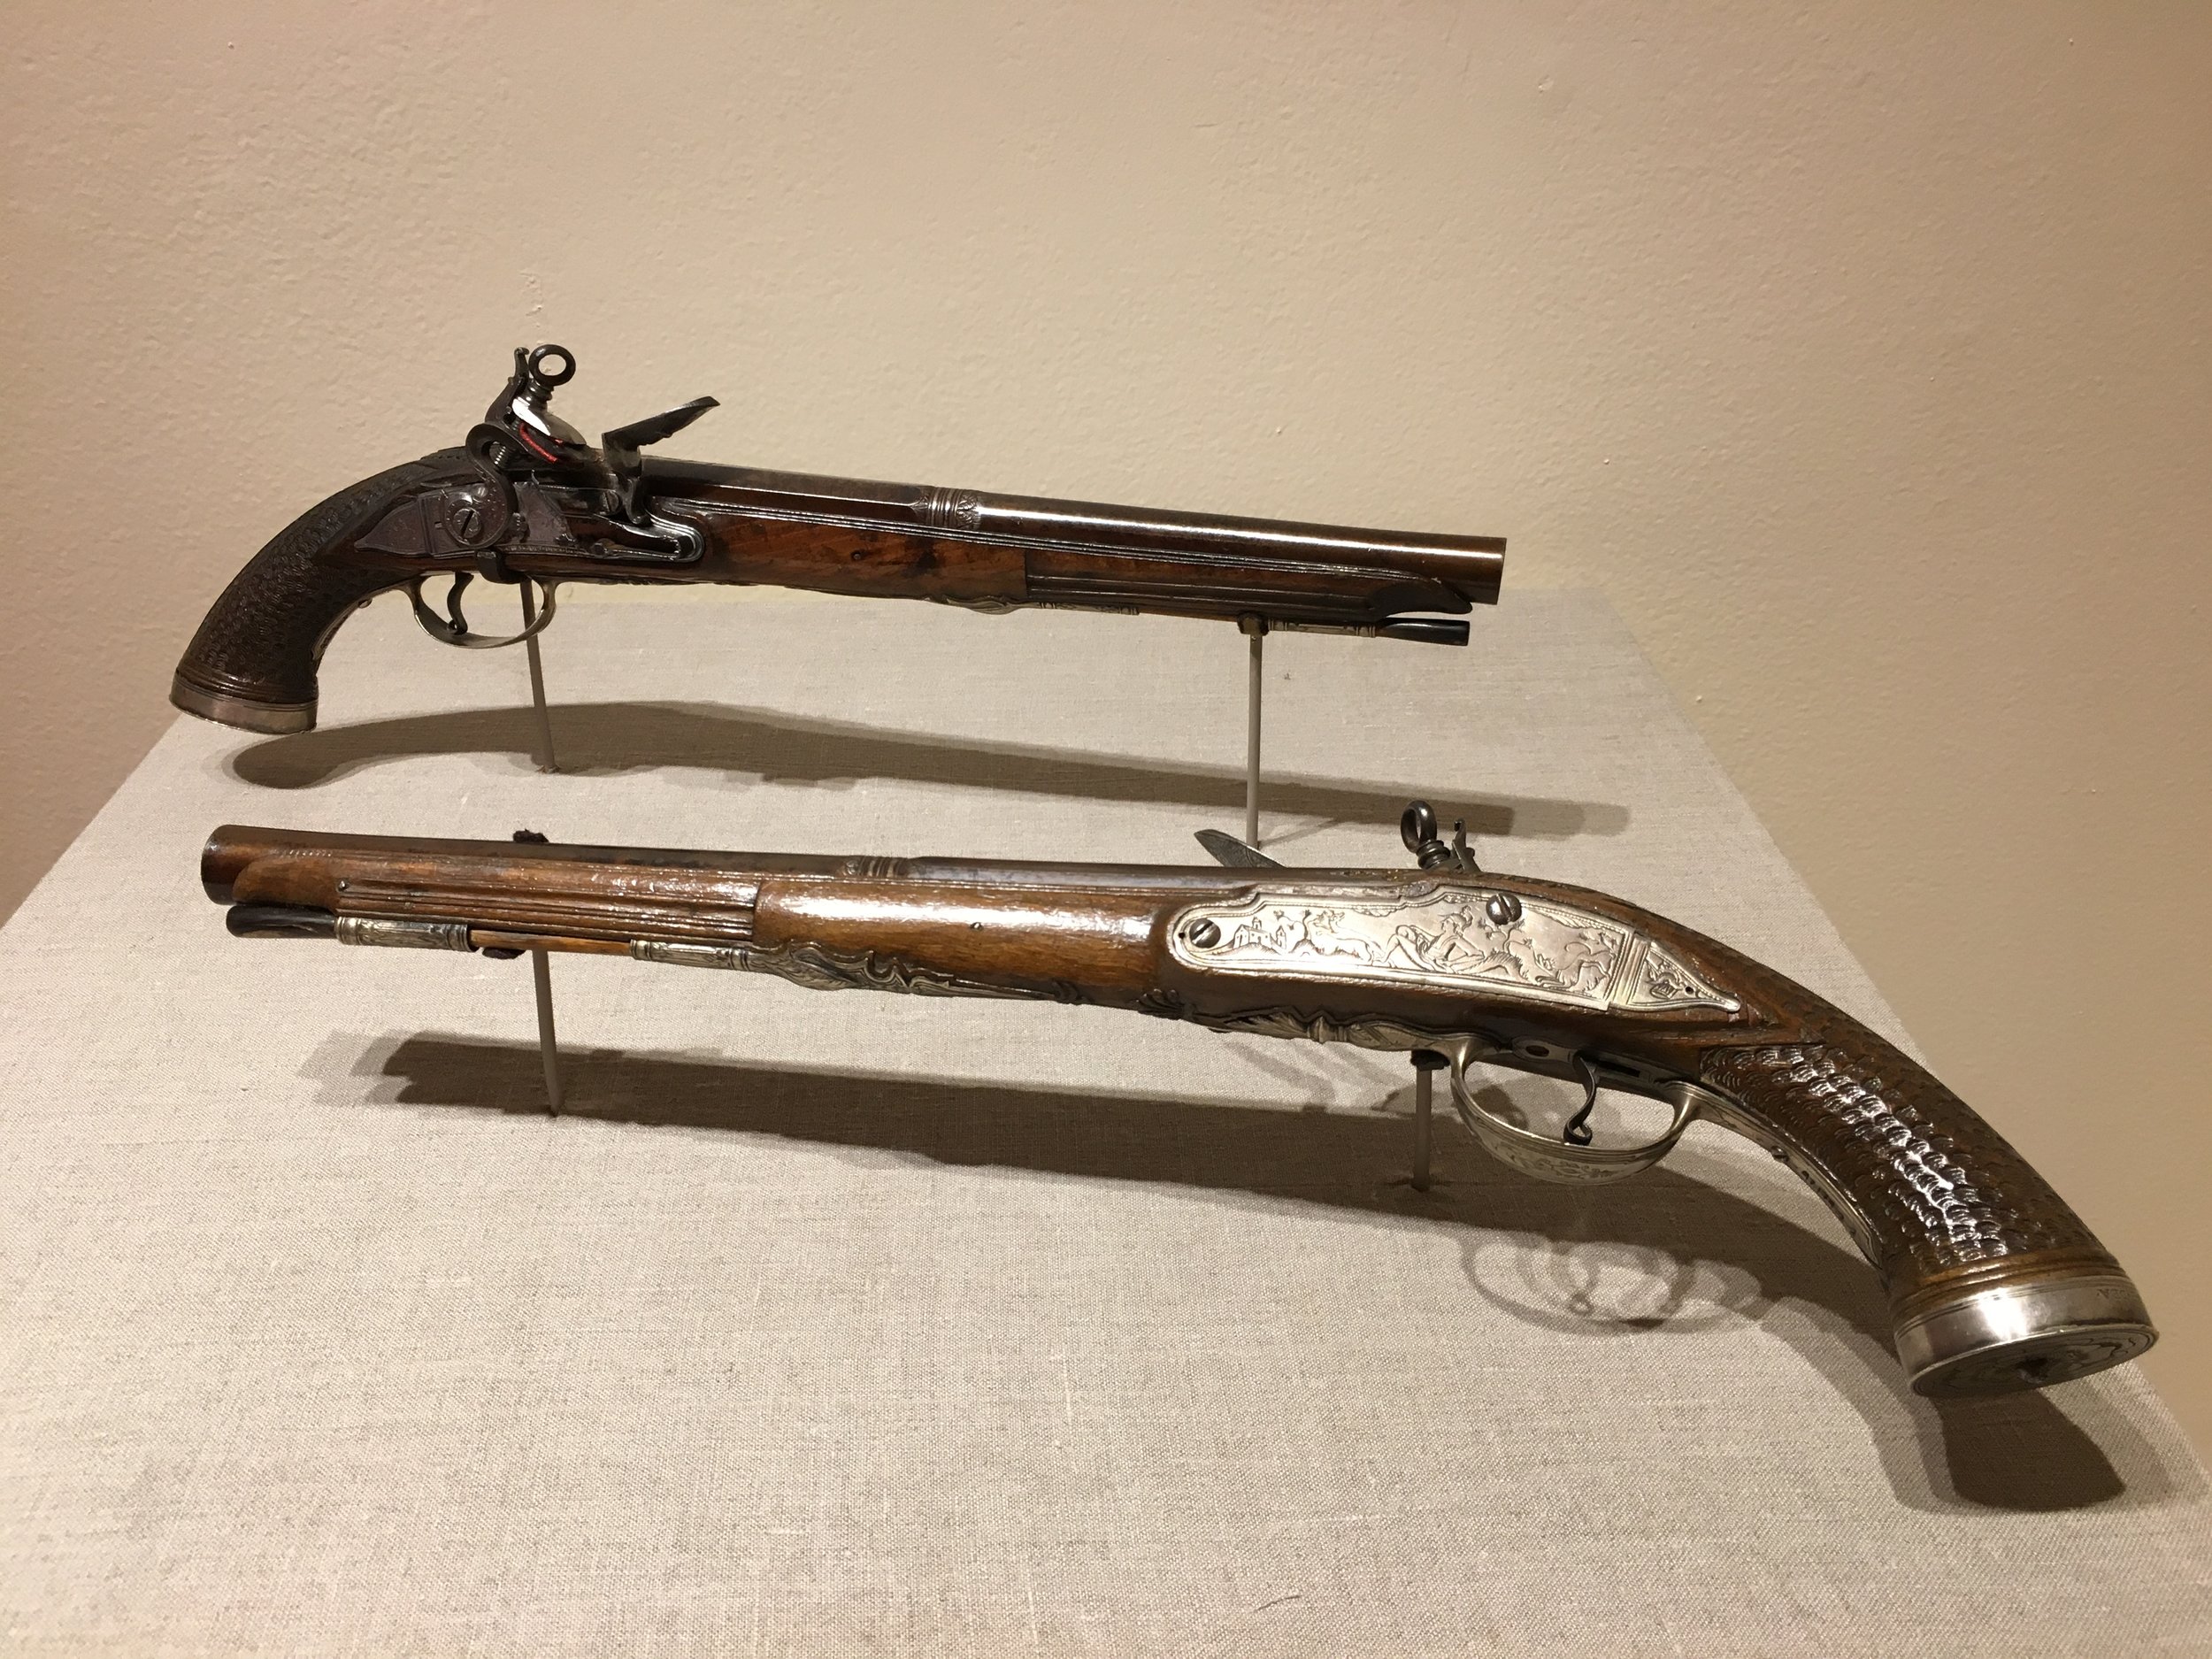   1756 Pedro Esteva Flintlock Pistols  